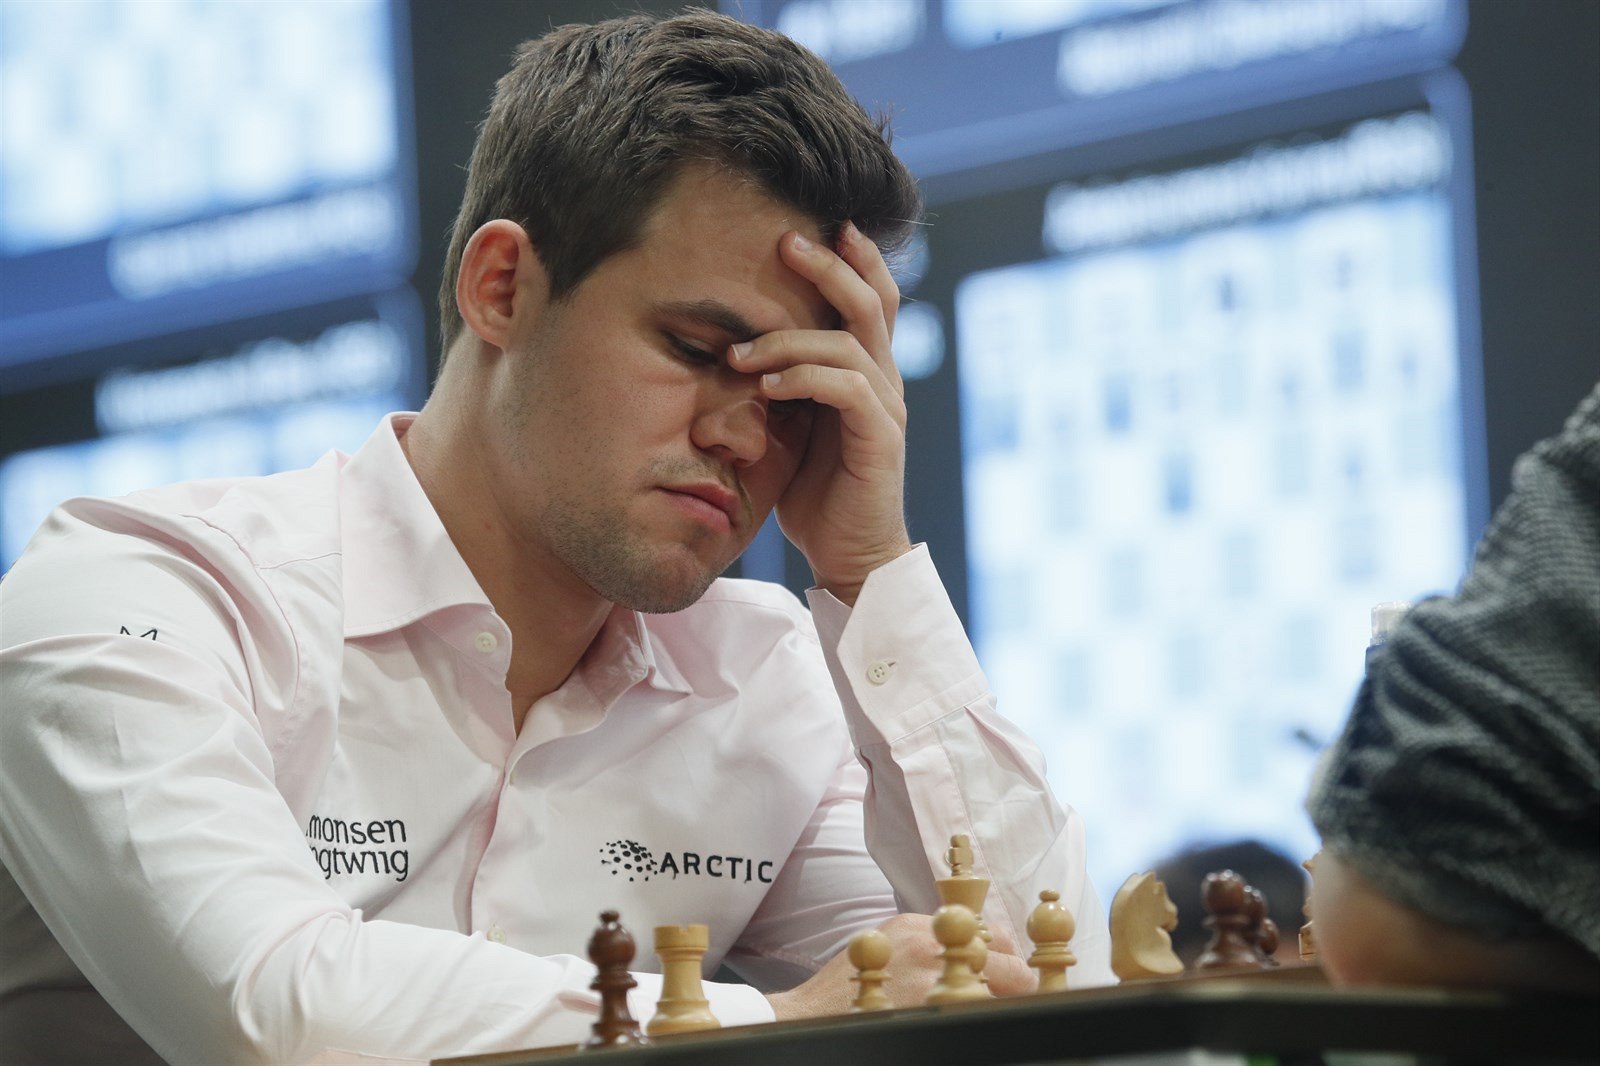 Šachový král Carlsen vyhrál další online turnaj, tentokrát z Dánska - iDNES. cz